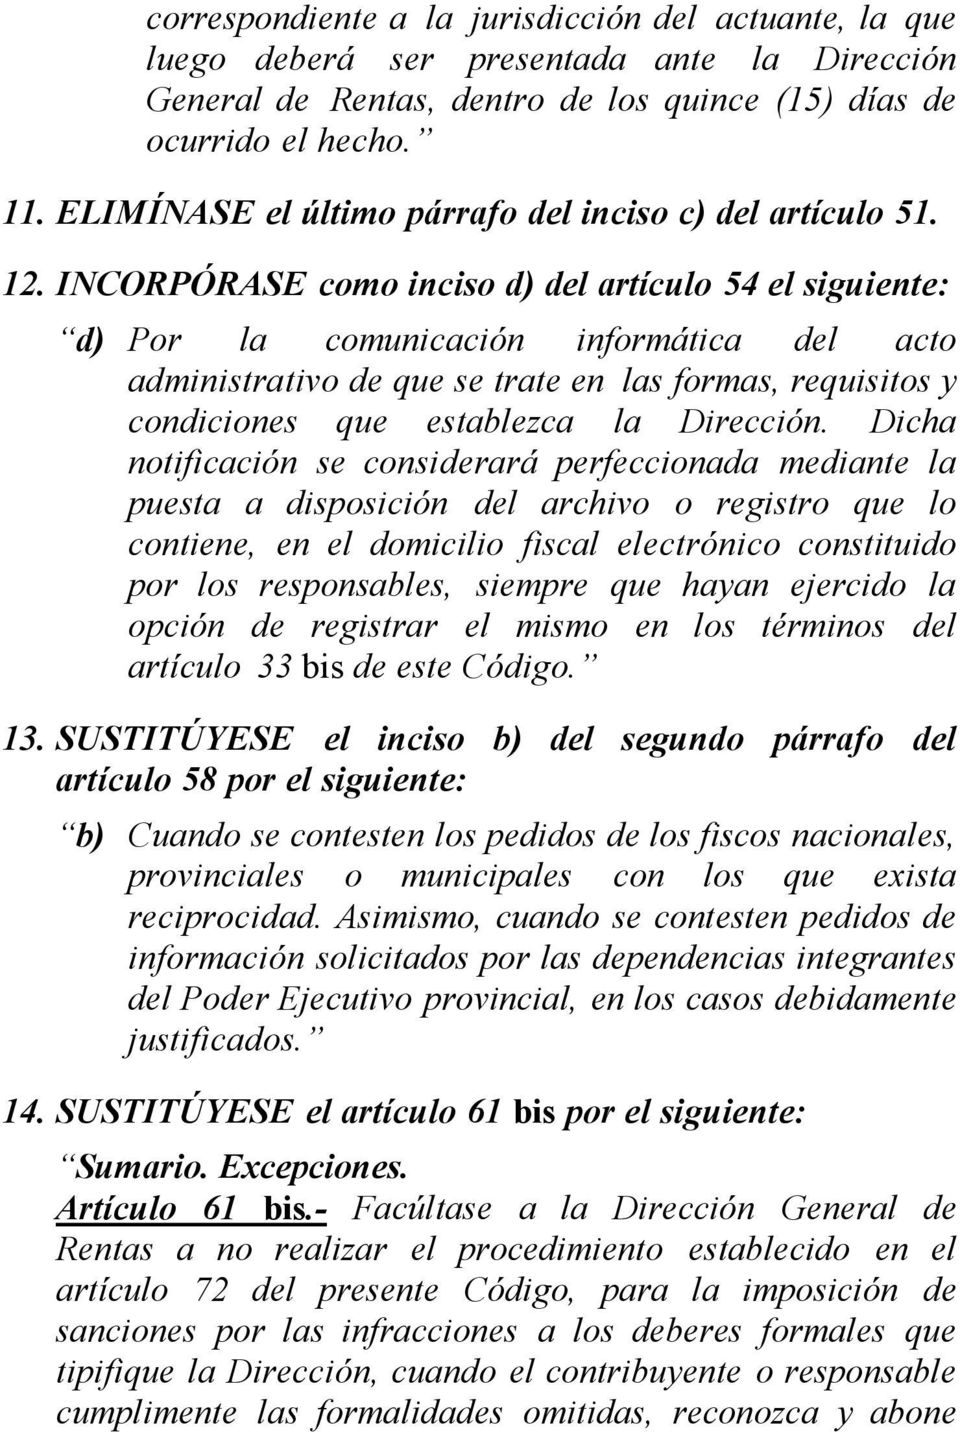 INCORPÓRASE como inciso d) del artículo 54 el d) Por la comunicación informática del acto administrativo de que se trate en las formas, requisitos y condiciones que establezca la Dirección.